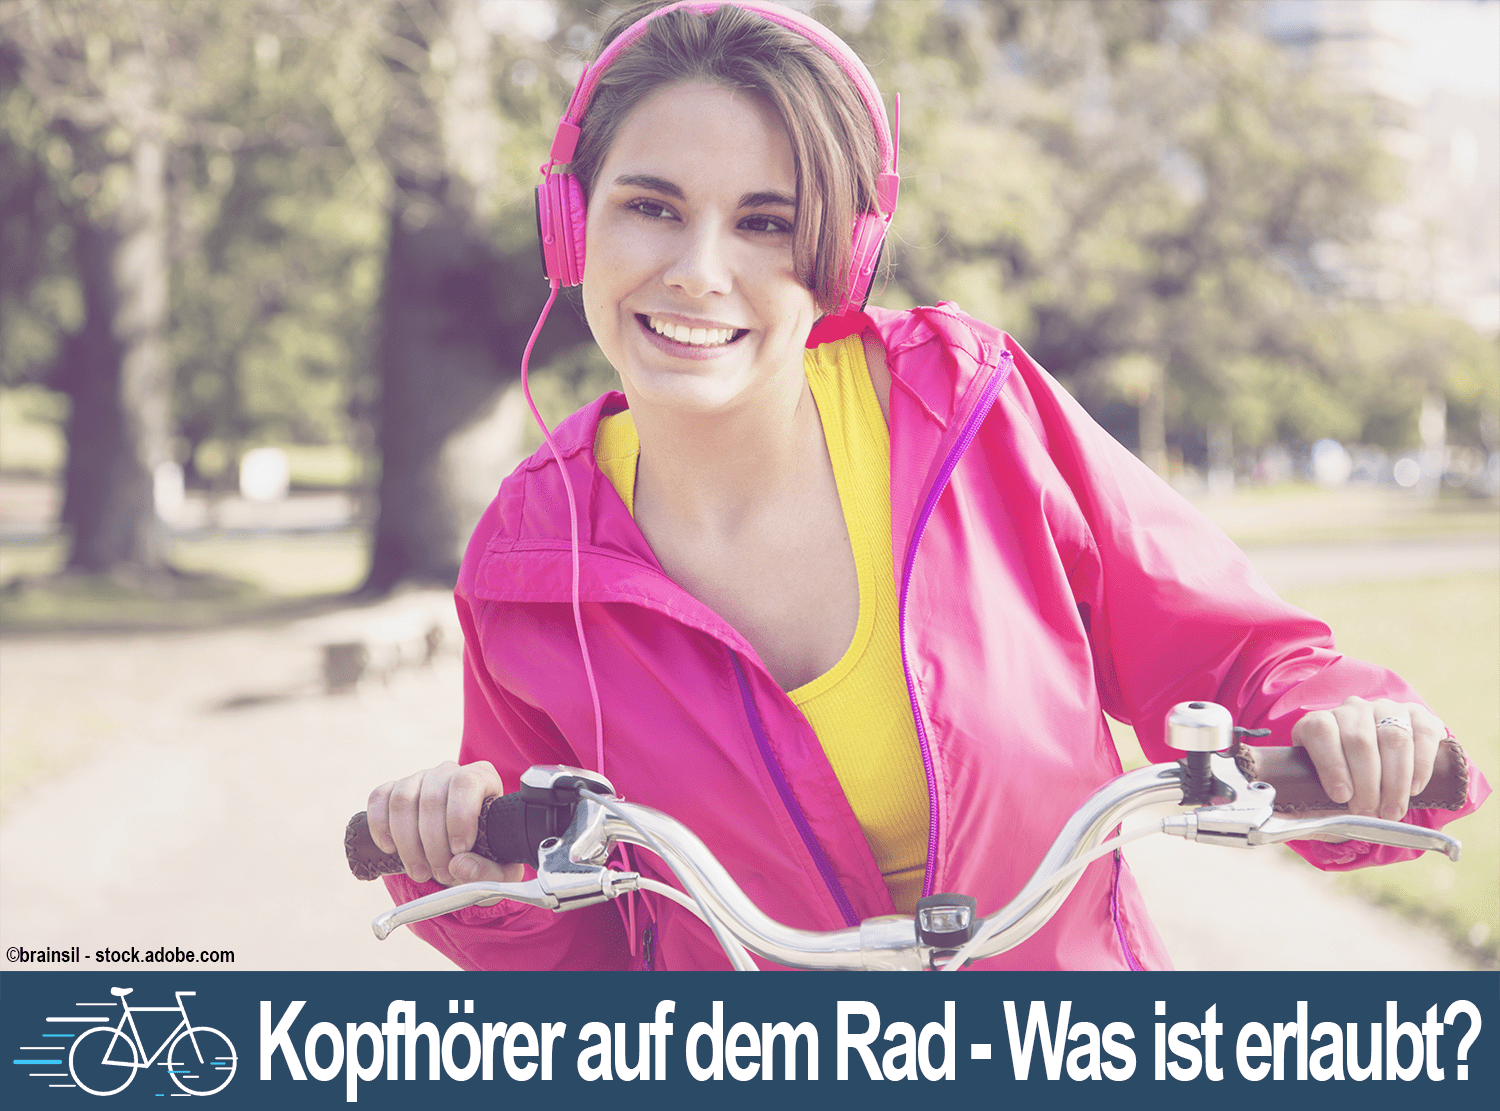 Kopfhörern_auf_dem_Rad_erlaubt_ADFC_Sachsen-Anhalt - Fahrradstadt Magazin